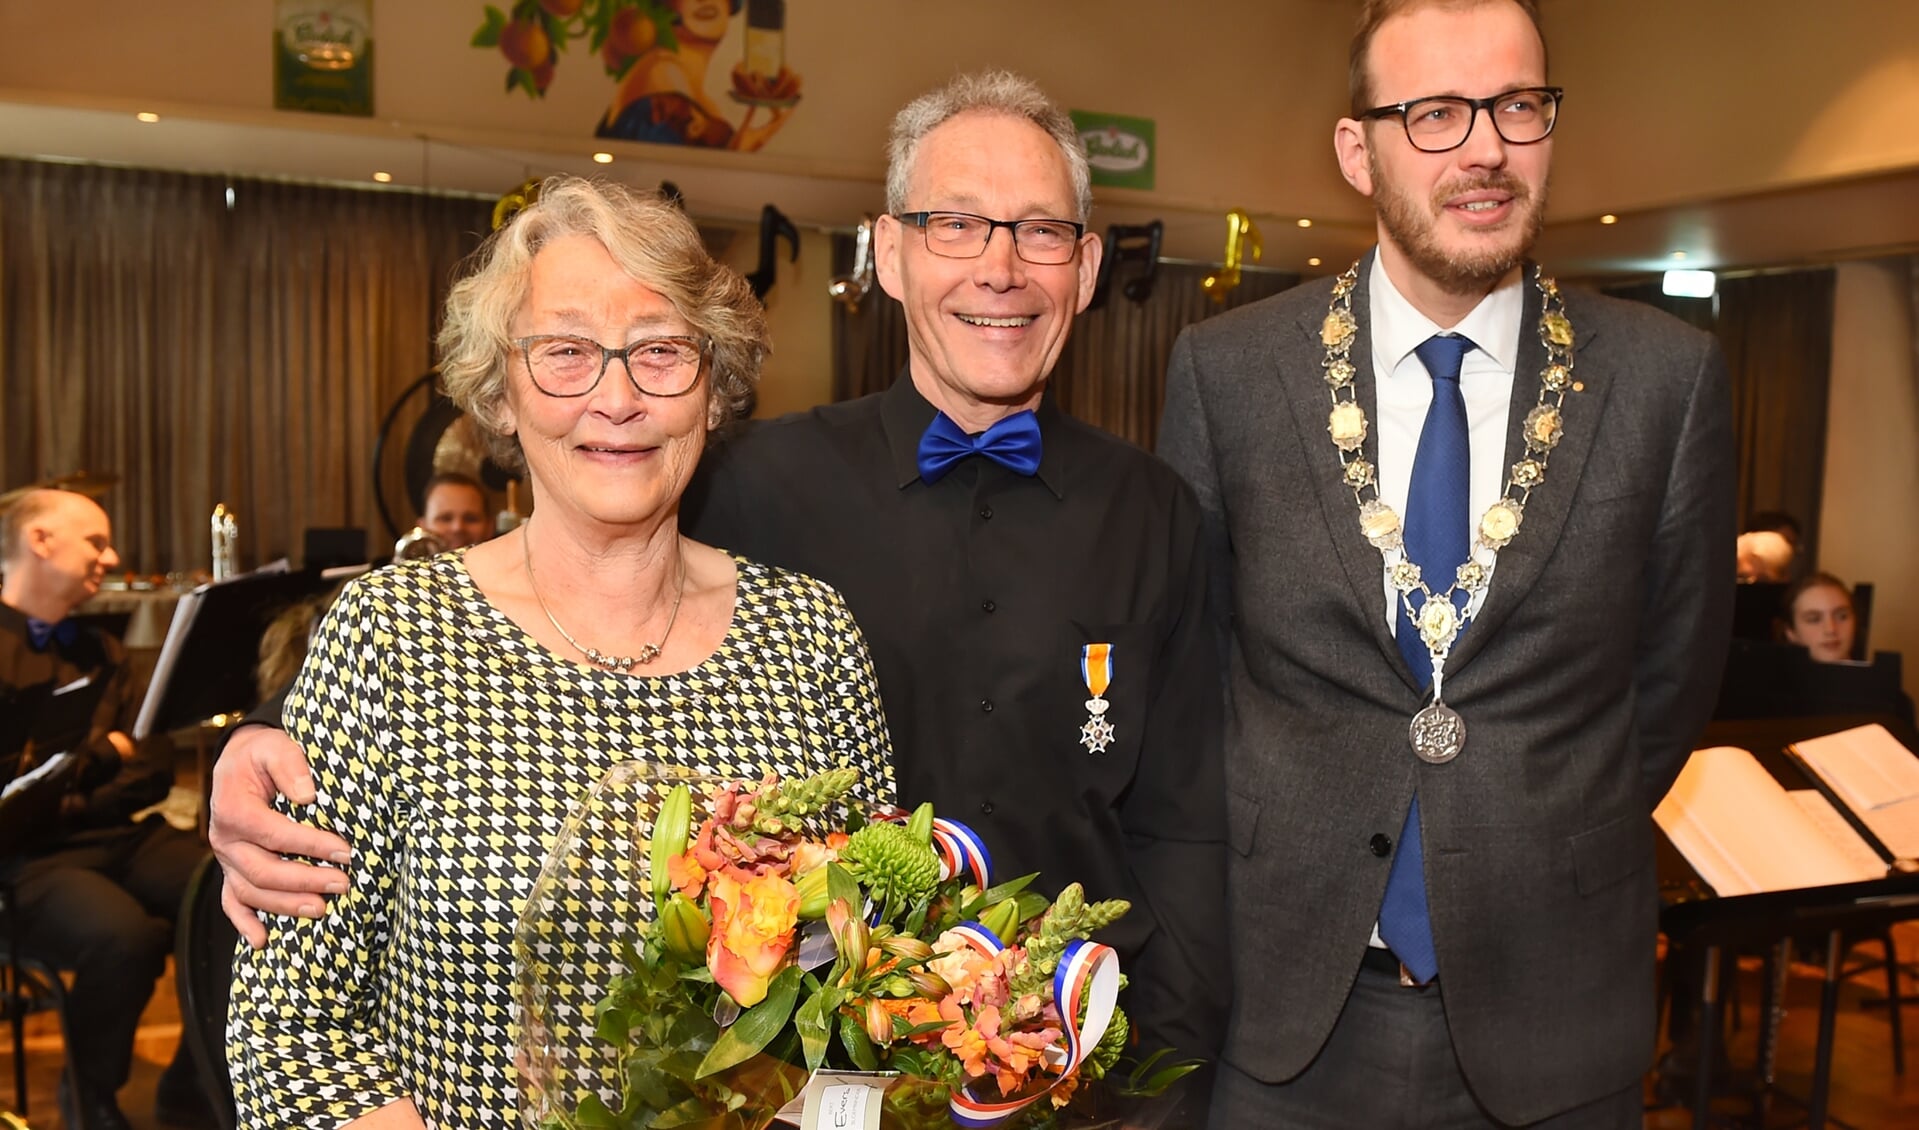 Burgemeester Mark Boumans reikt koninklijke onderscheiding uit aan Theo Dekkers. Foto: Roel Kleinpenning